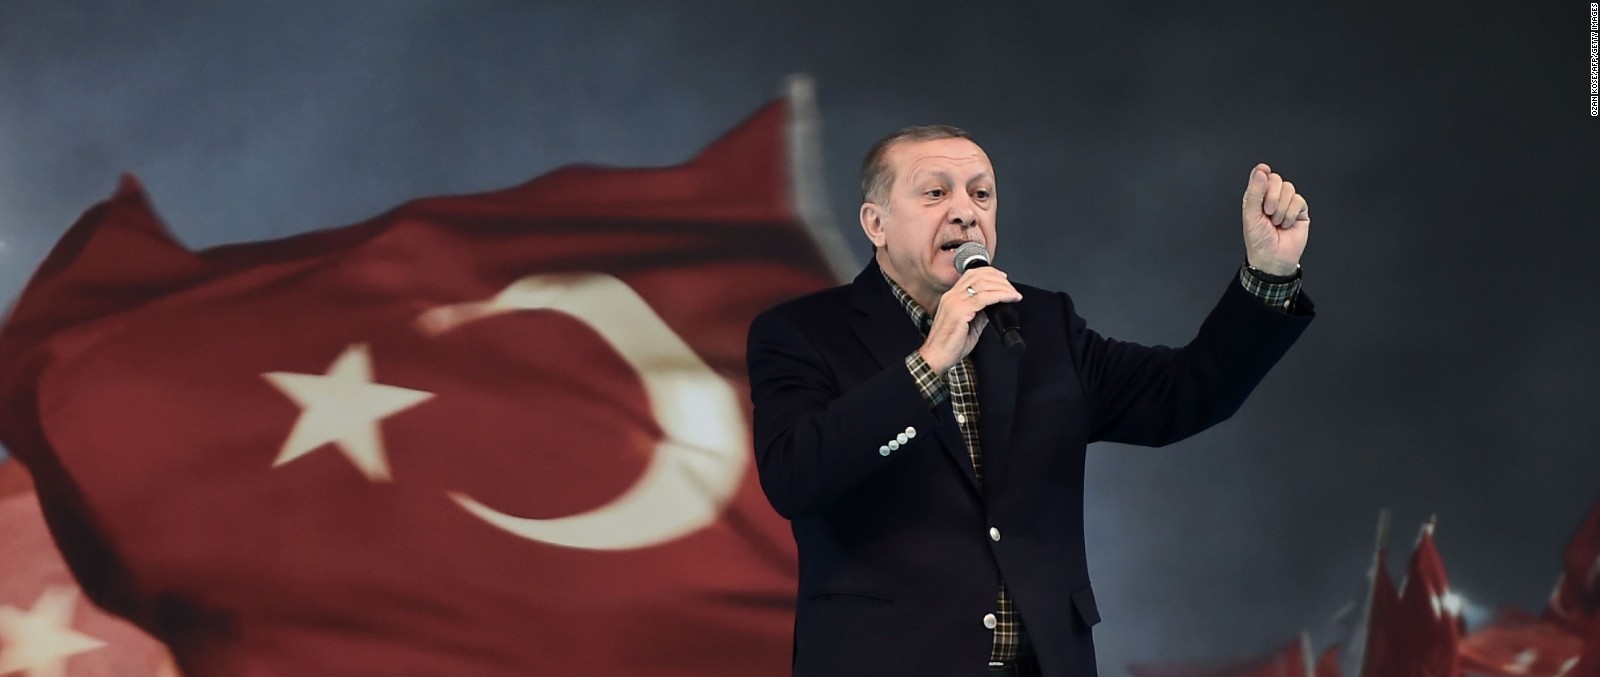 Απίστευτο: Μειώνει αντί να αυξήσει τα επιτόκια δανεισμού στη Τουρκία ο Ρ.Τ.Ερντογάν! – Ρίχνει «φθηνό» χρήμα στην αγορά